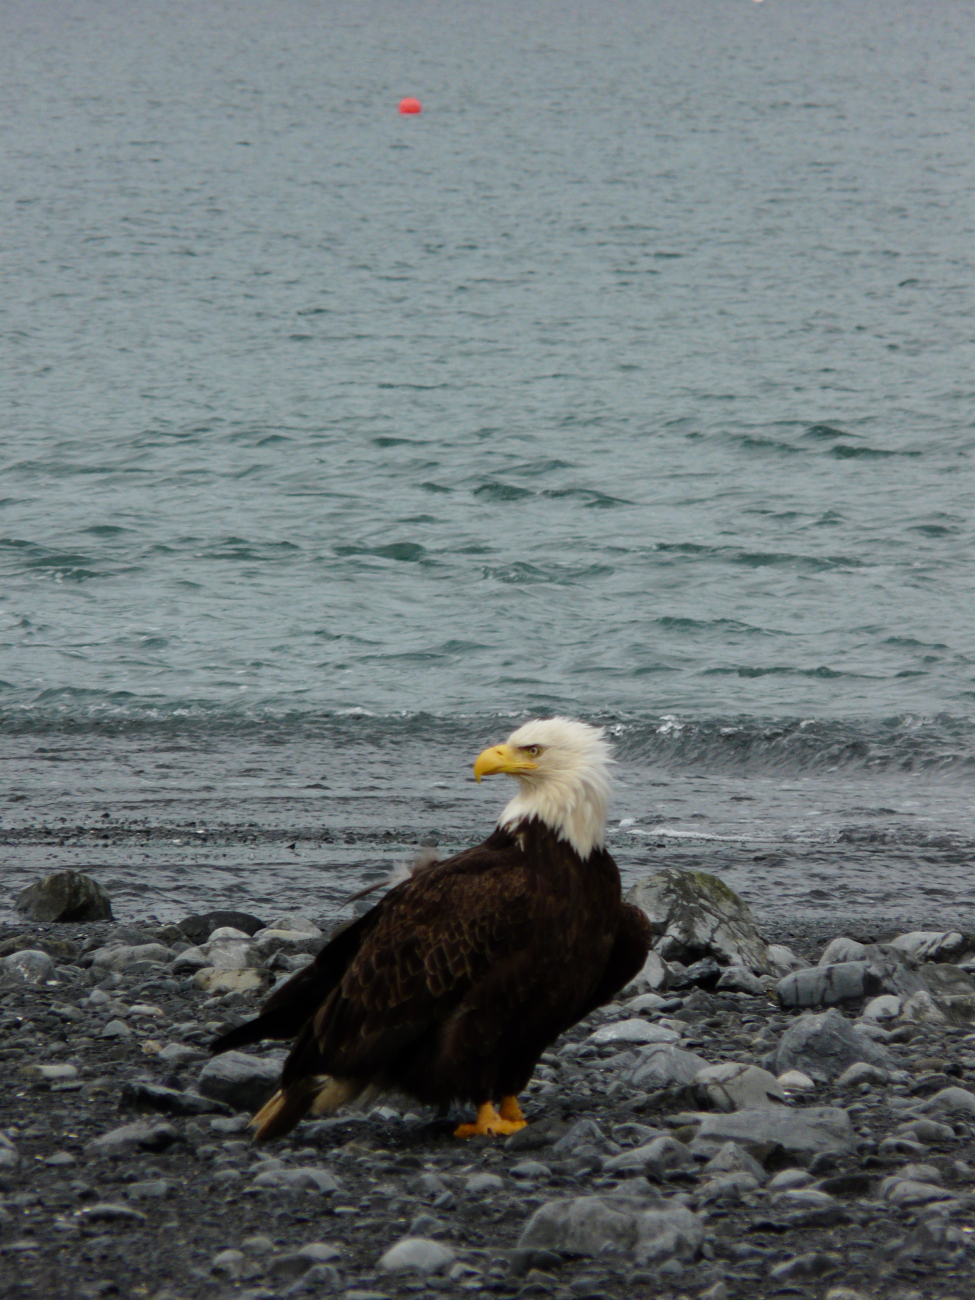 Bald eagle on the beach